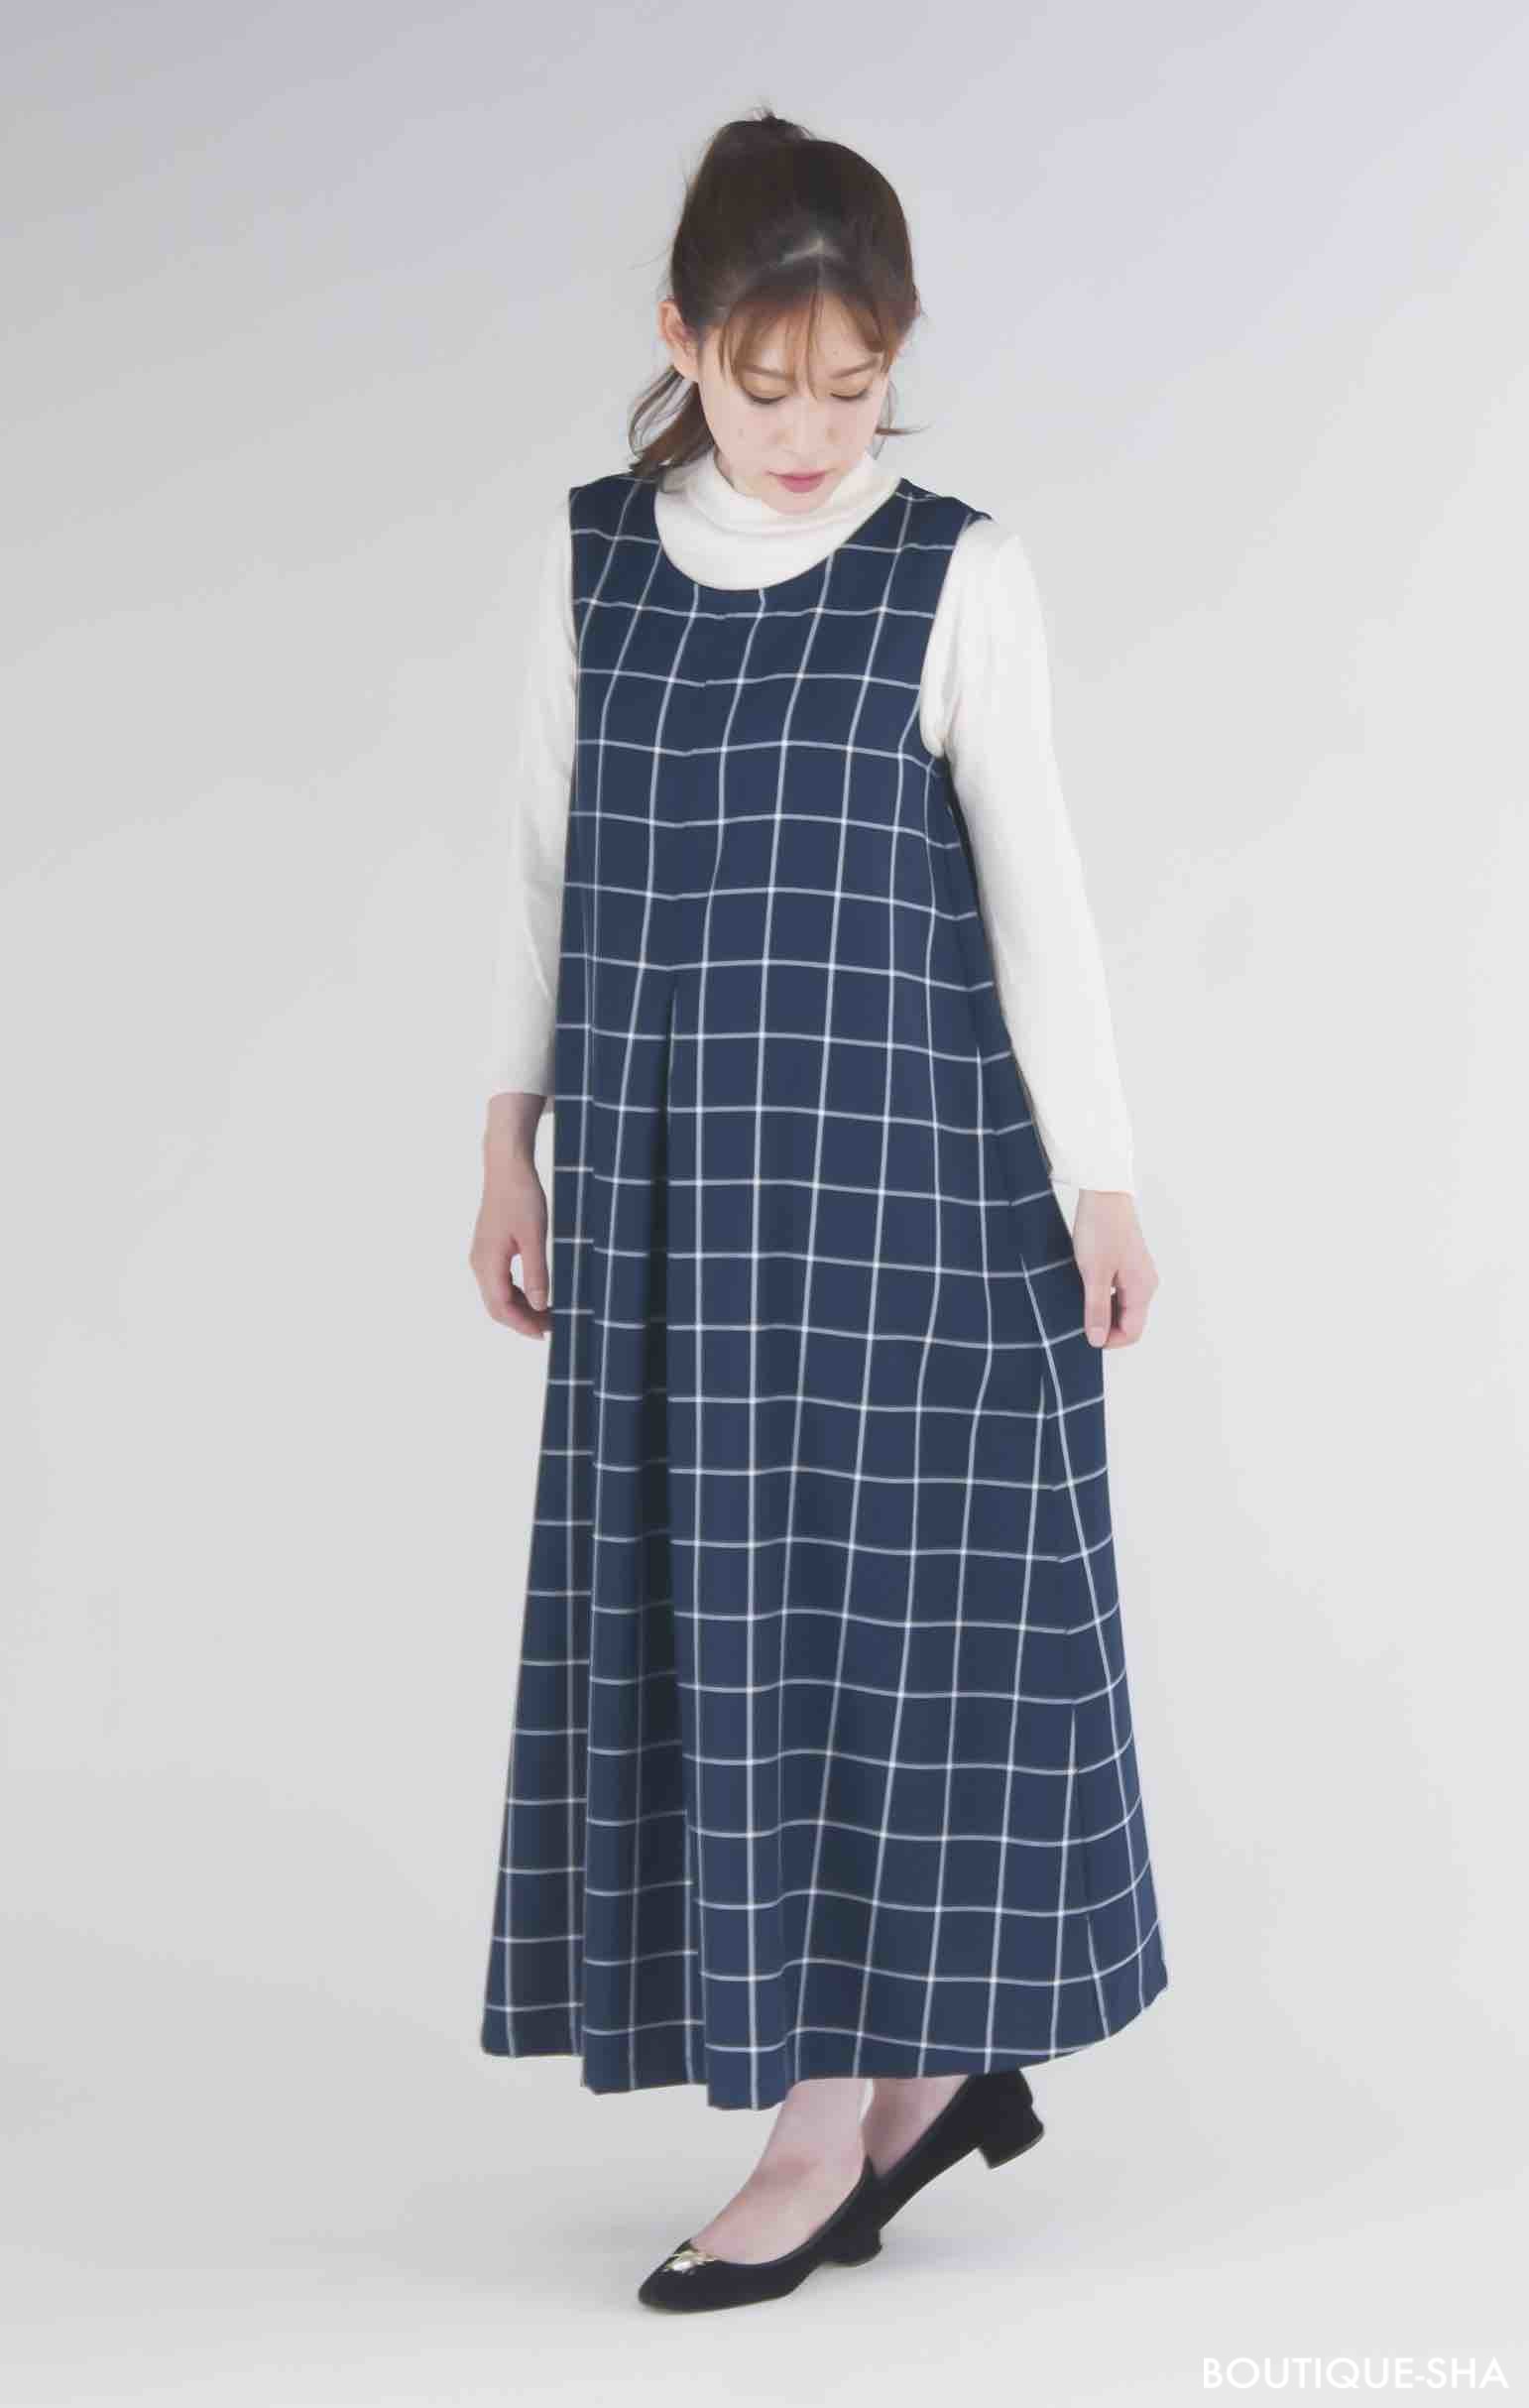 高橋恵美子デザイン手ぬいのジャンパースカート Ec 0005 Sewing Pattern Studio ソーイング向け型紙販売 ブティック社